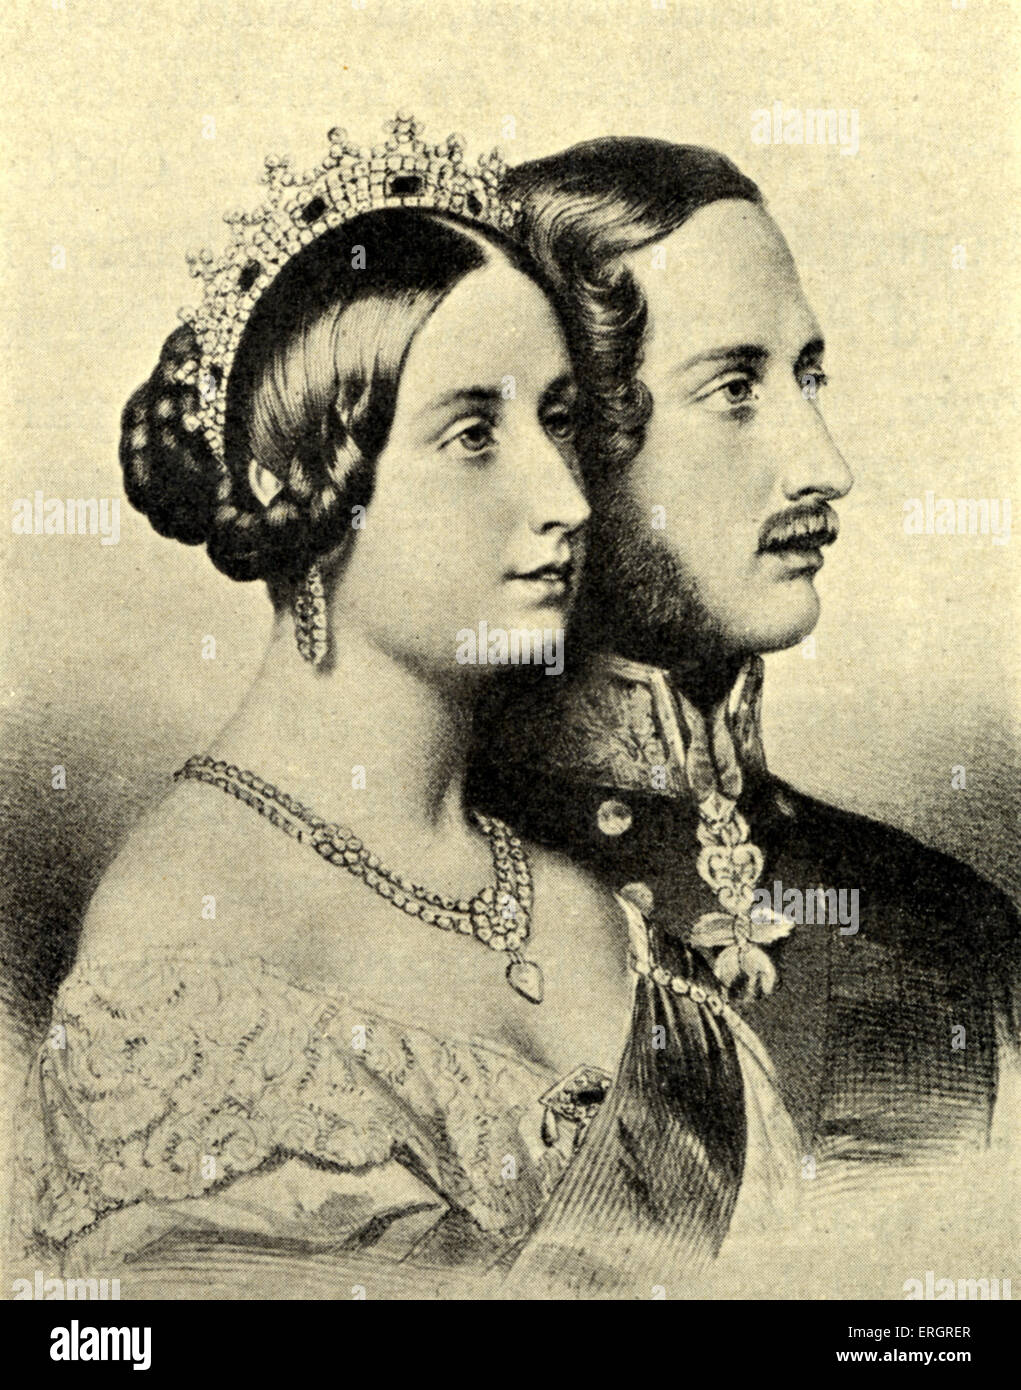 Königin Victoria Und Prinz Albert Porträts Im Profil Stockfotografie Alamy 